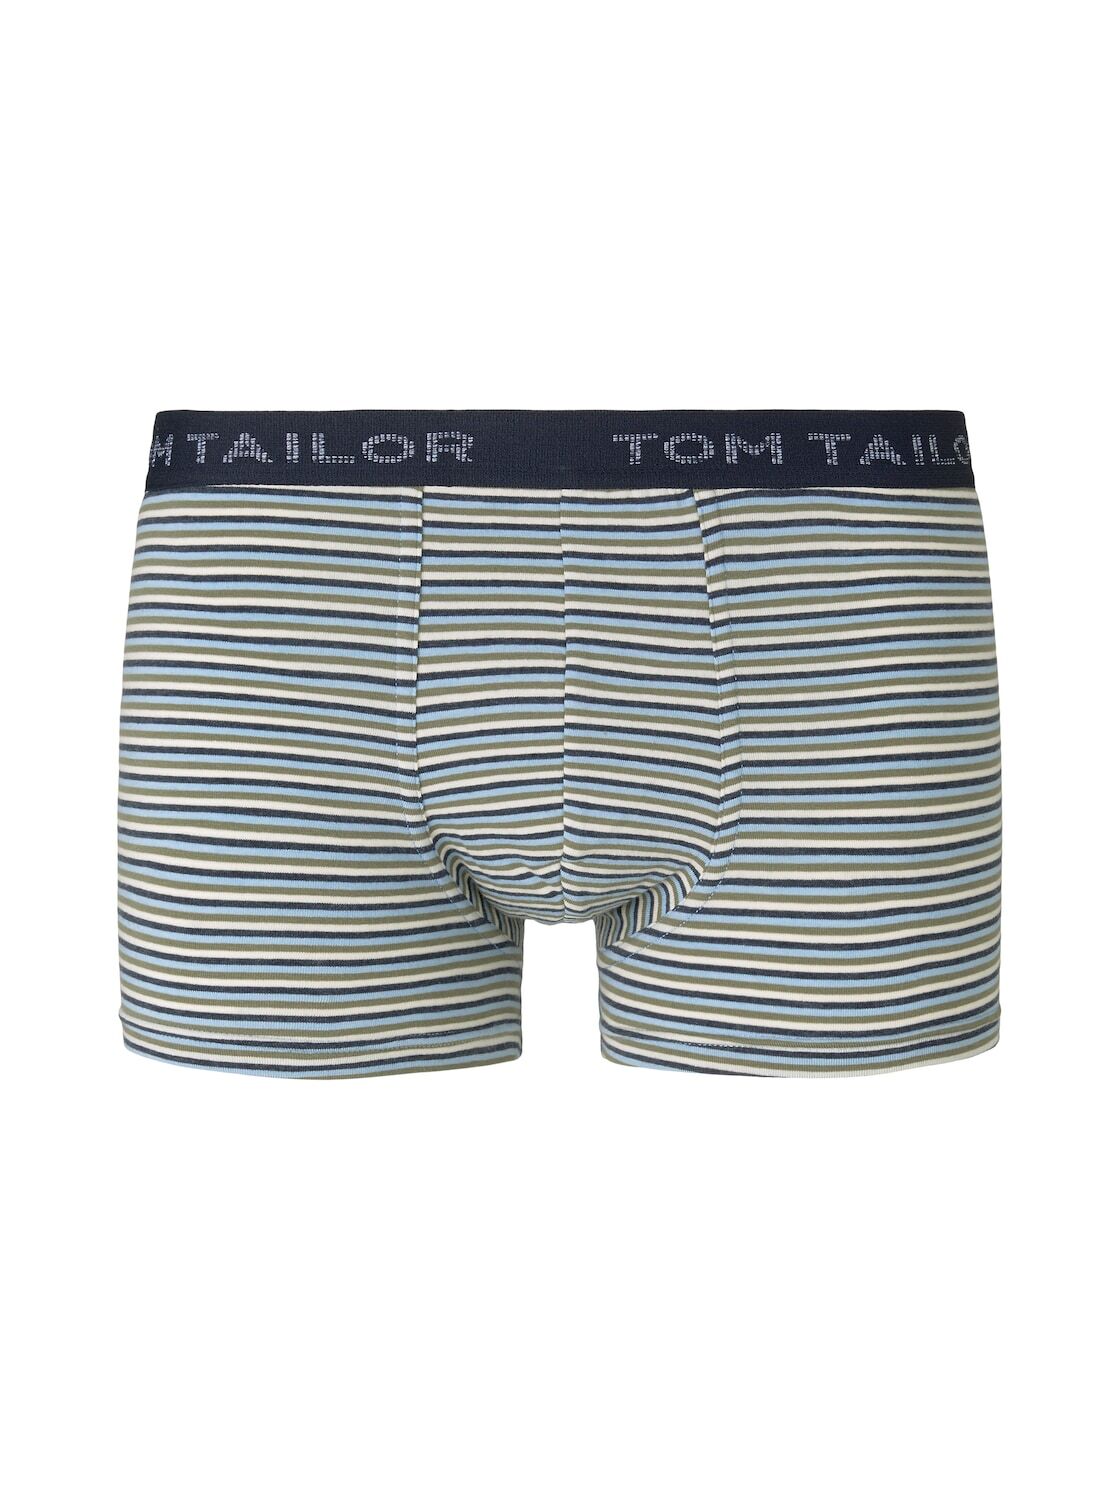 TOM TAILOR Herren Gestreifte Hip Pants, blau, Gr.M/5